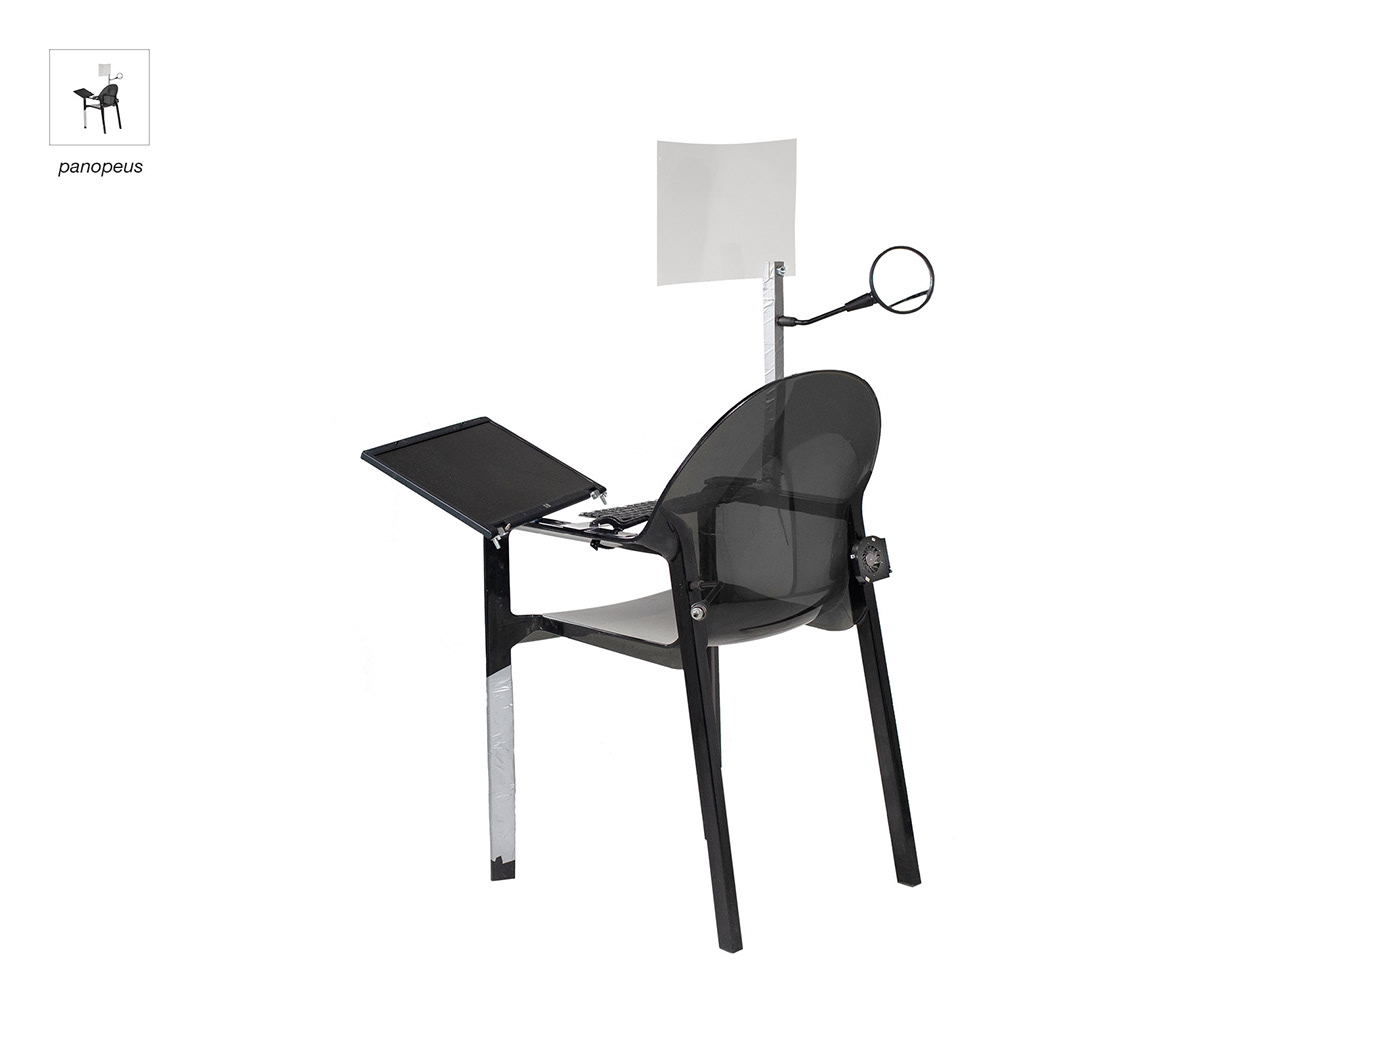 Critical Design experience design furniture object sensorial speculative